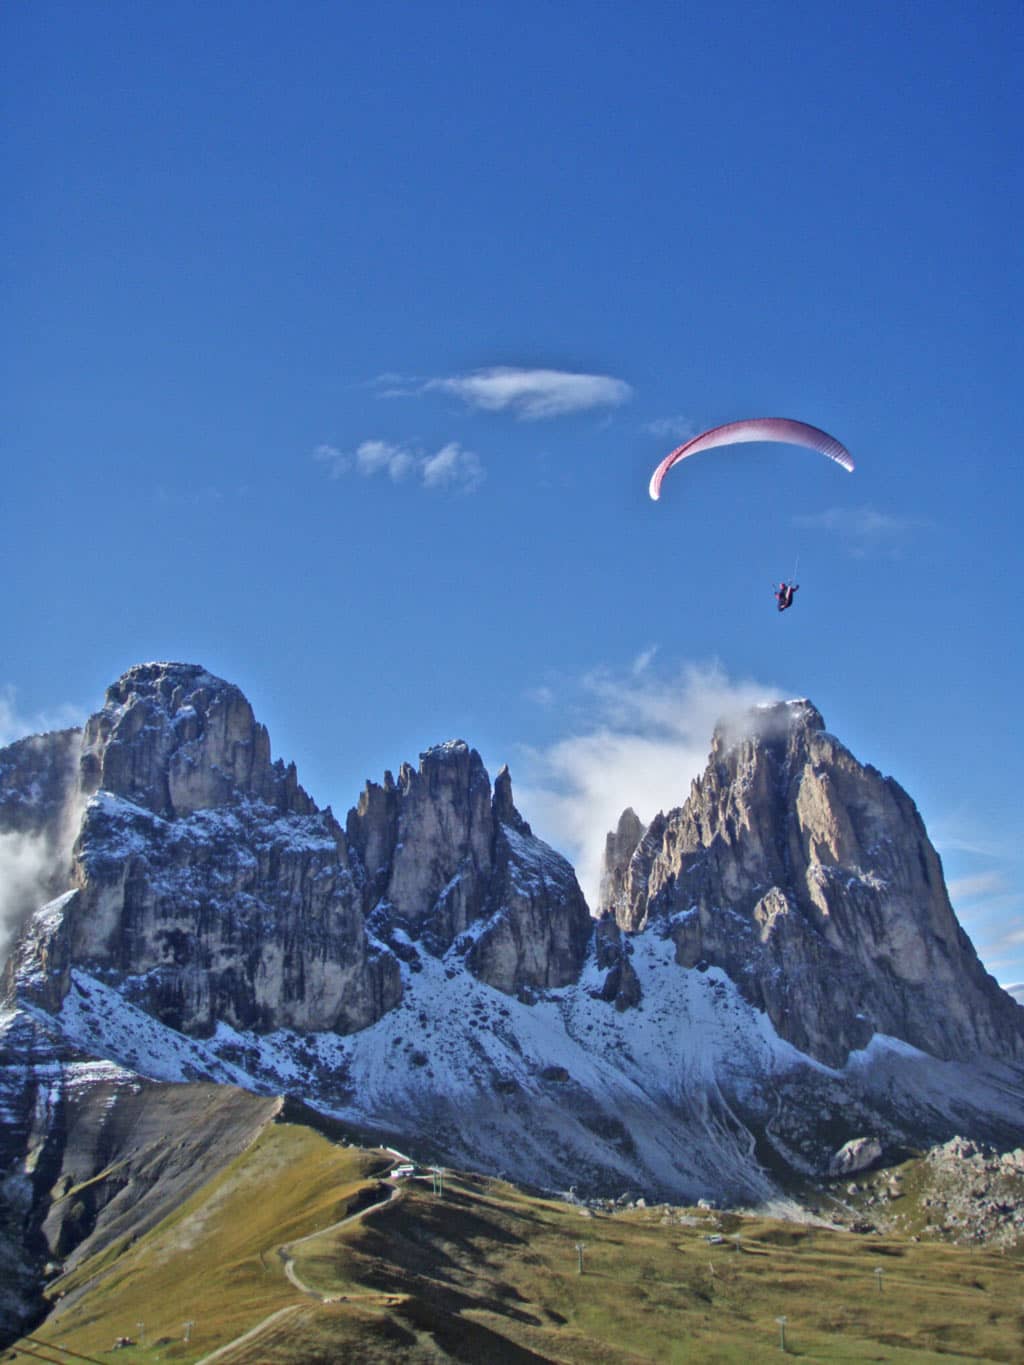 Der Col Rodella in den Dolomiten wird im Herbst zum Flugmekka für Gleitschirmpiloten